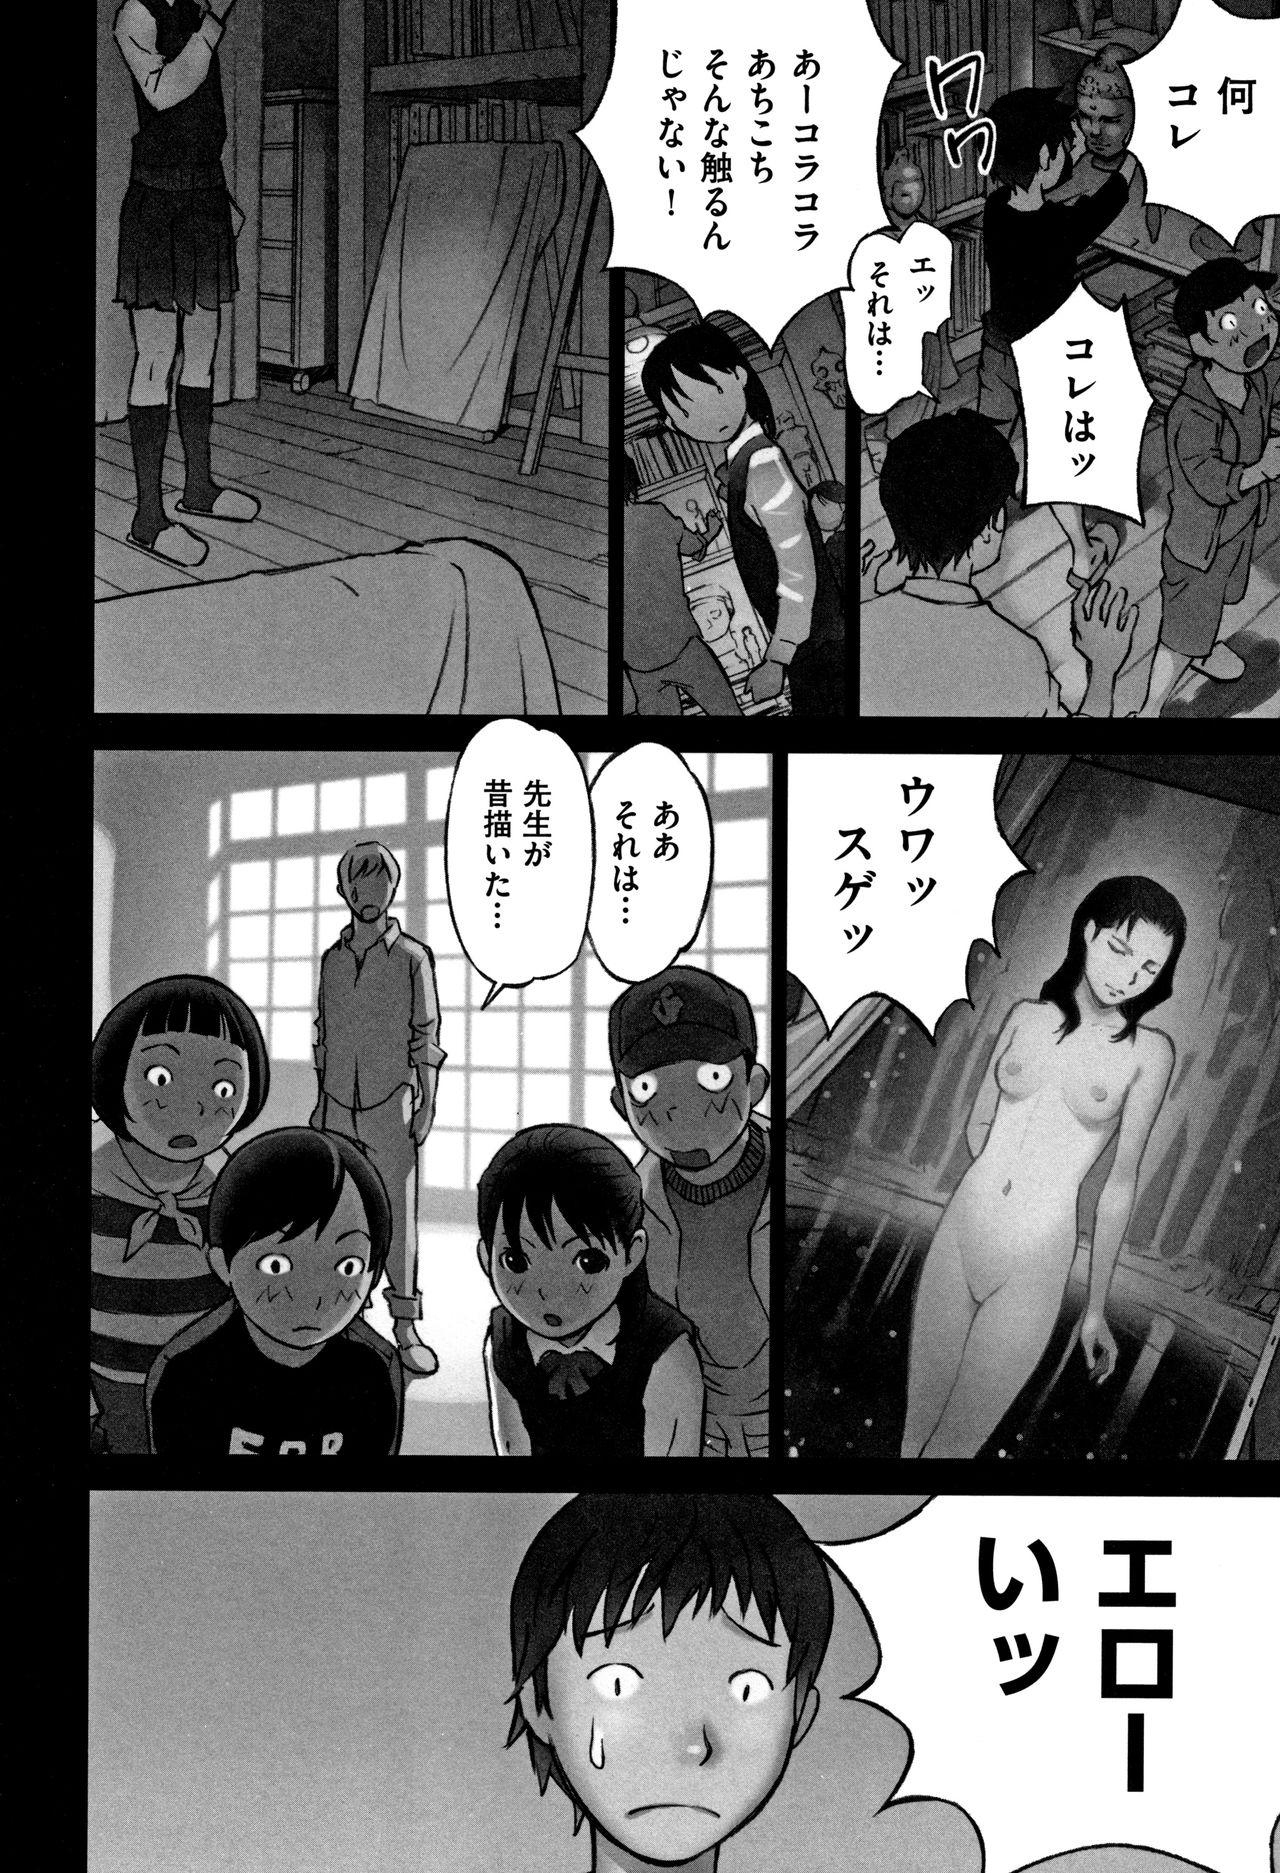 Otokonoko wa Soko no Kouzou ga Shiritai noda Page 181 Of 218.